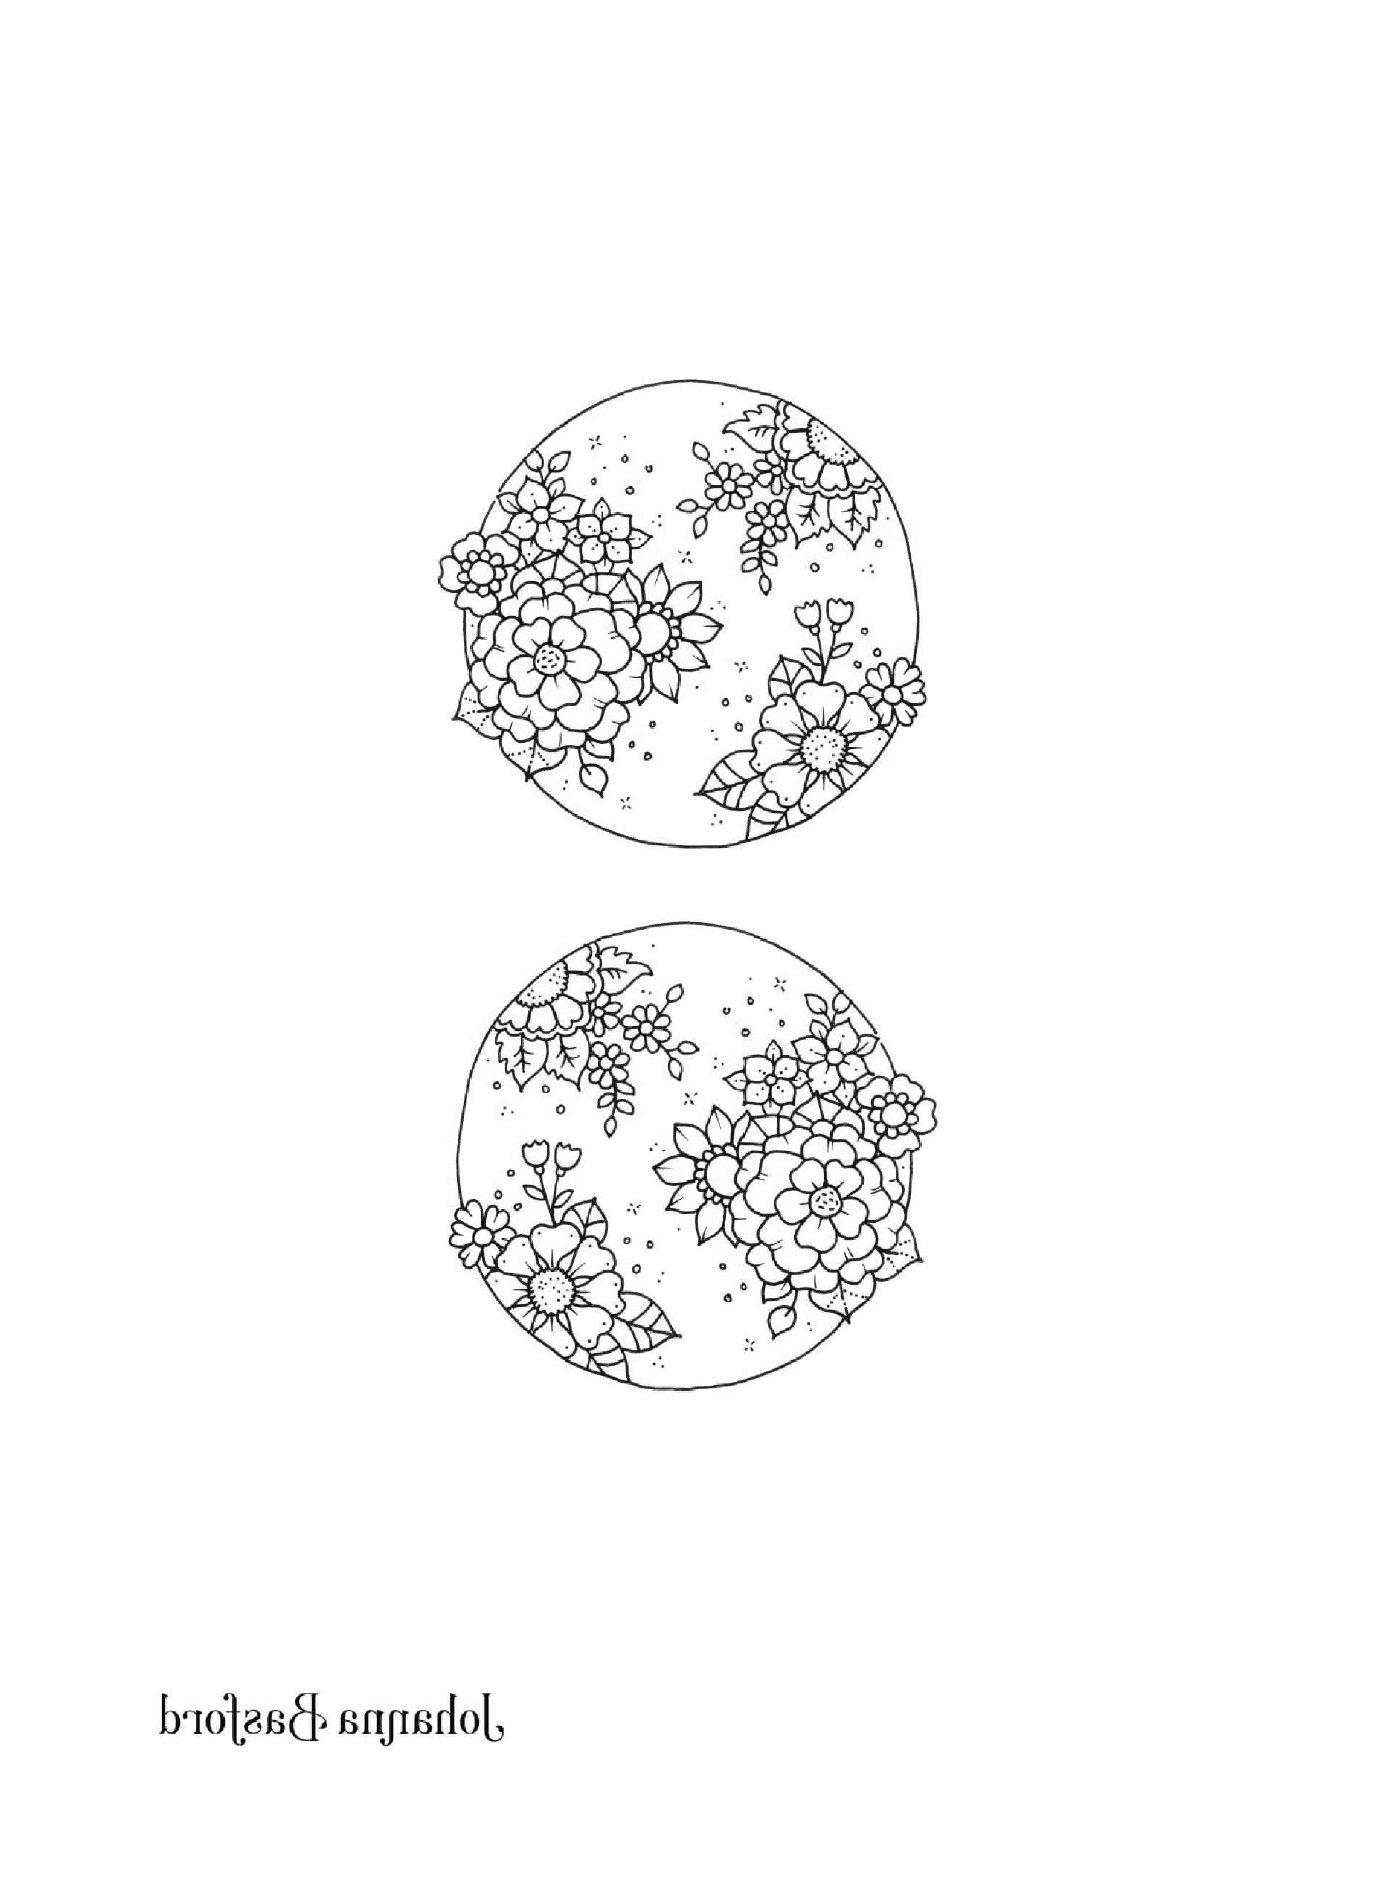  Dois desenhos em preto e branco de um globo 